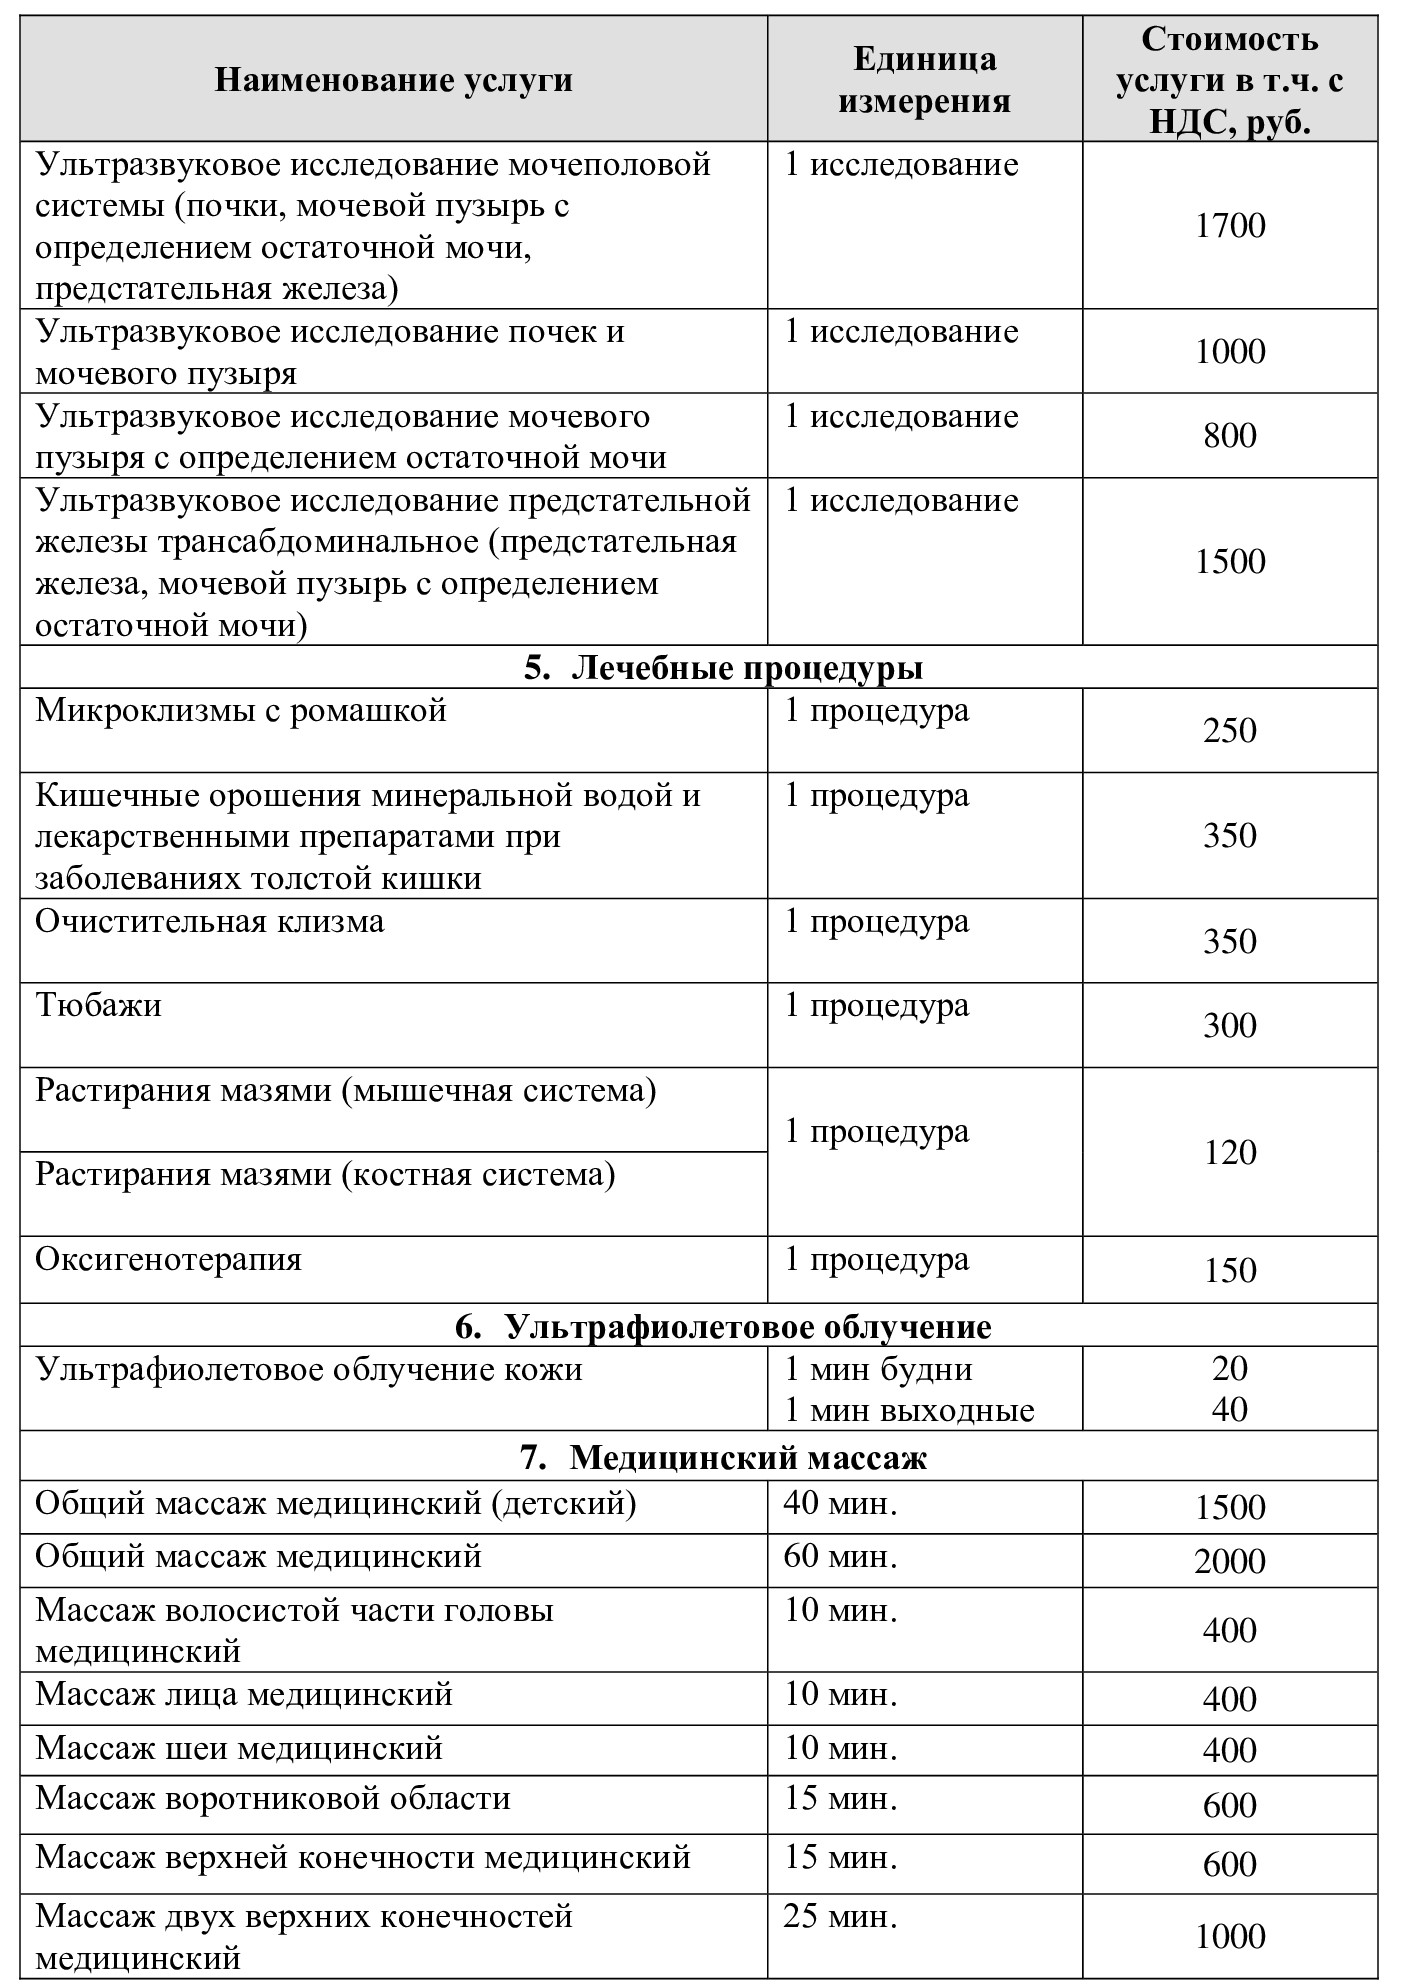 Цены на медицинские услуги Санаторий "Введенское" (Звенигород)